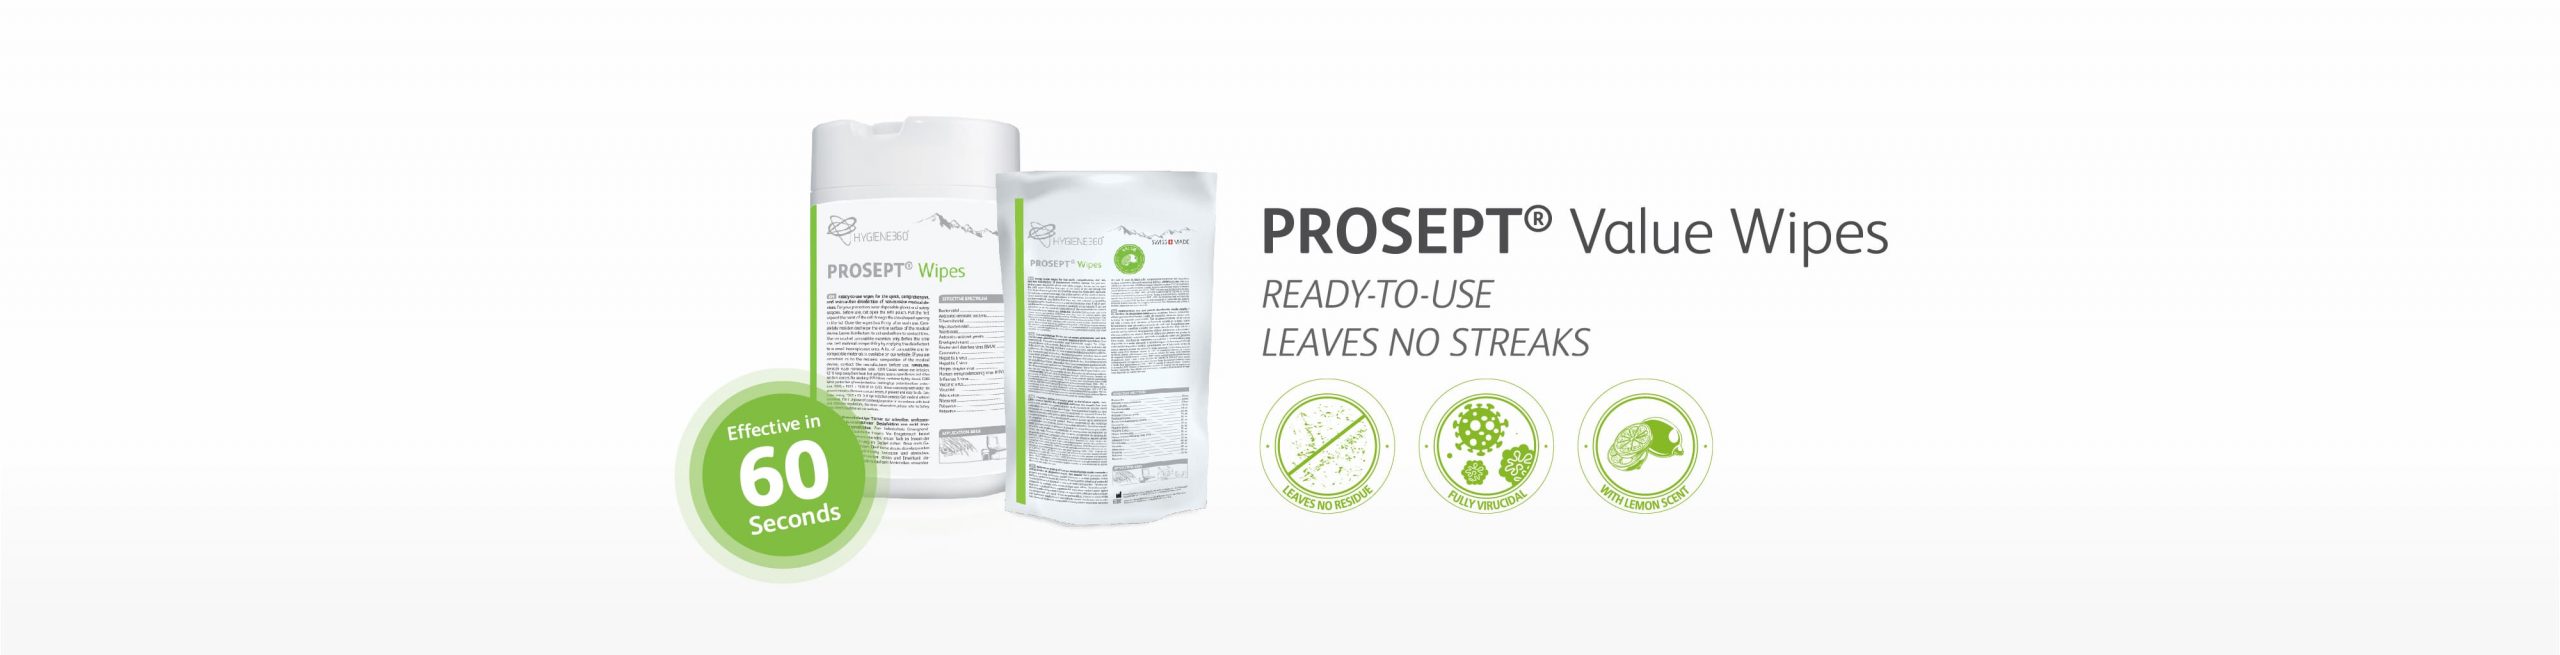 PROSEPT® Value Wipes